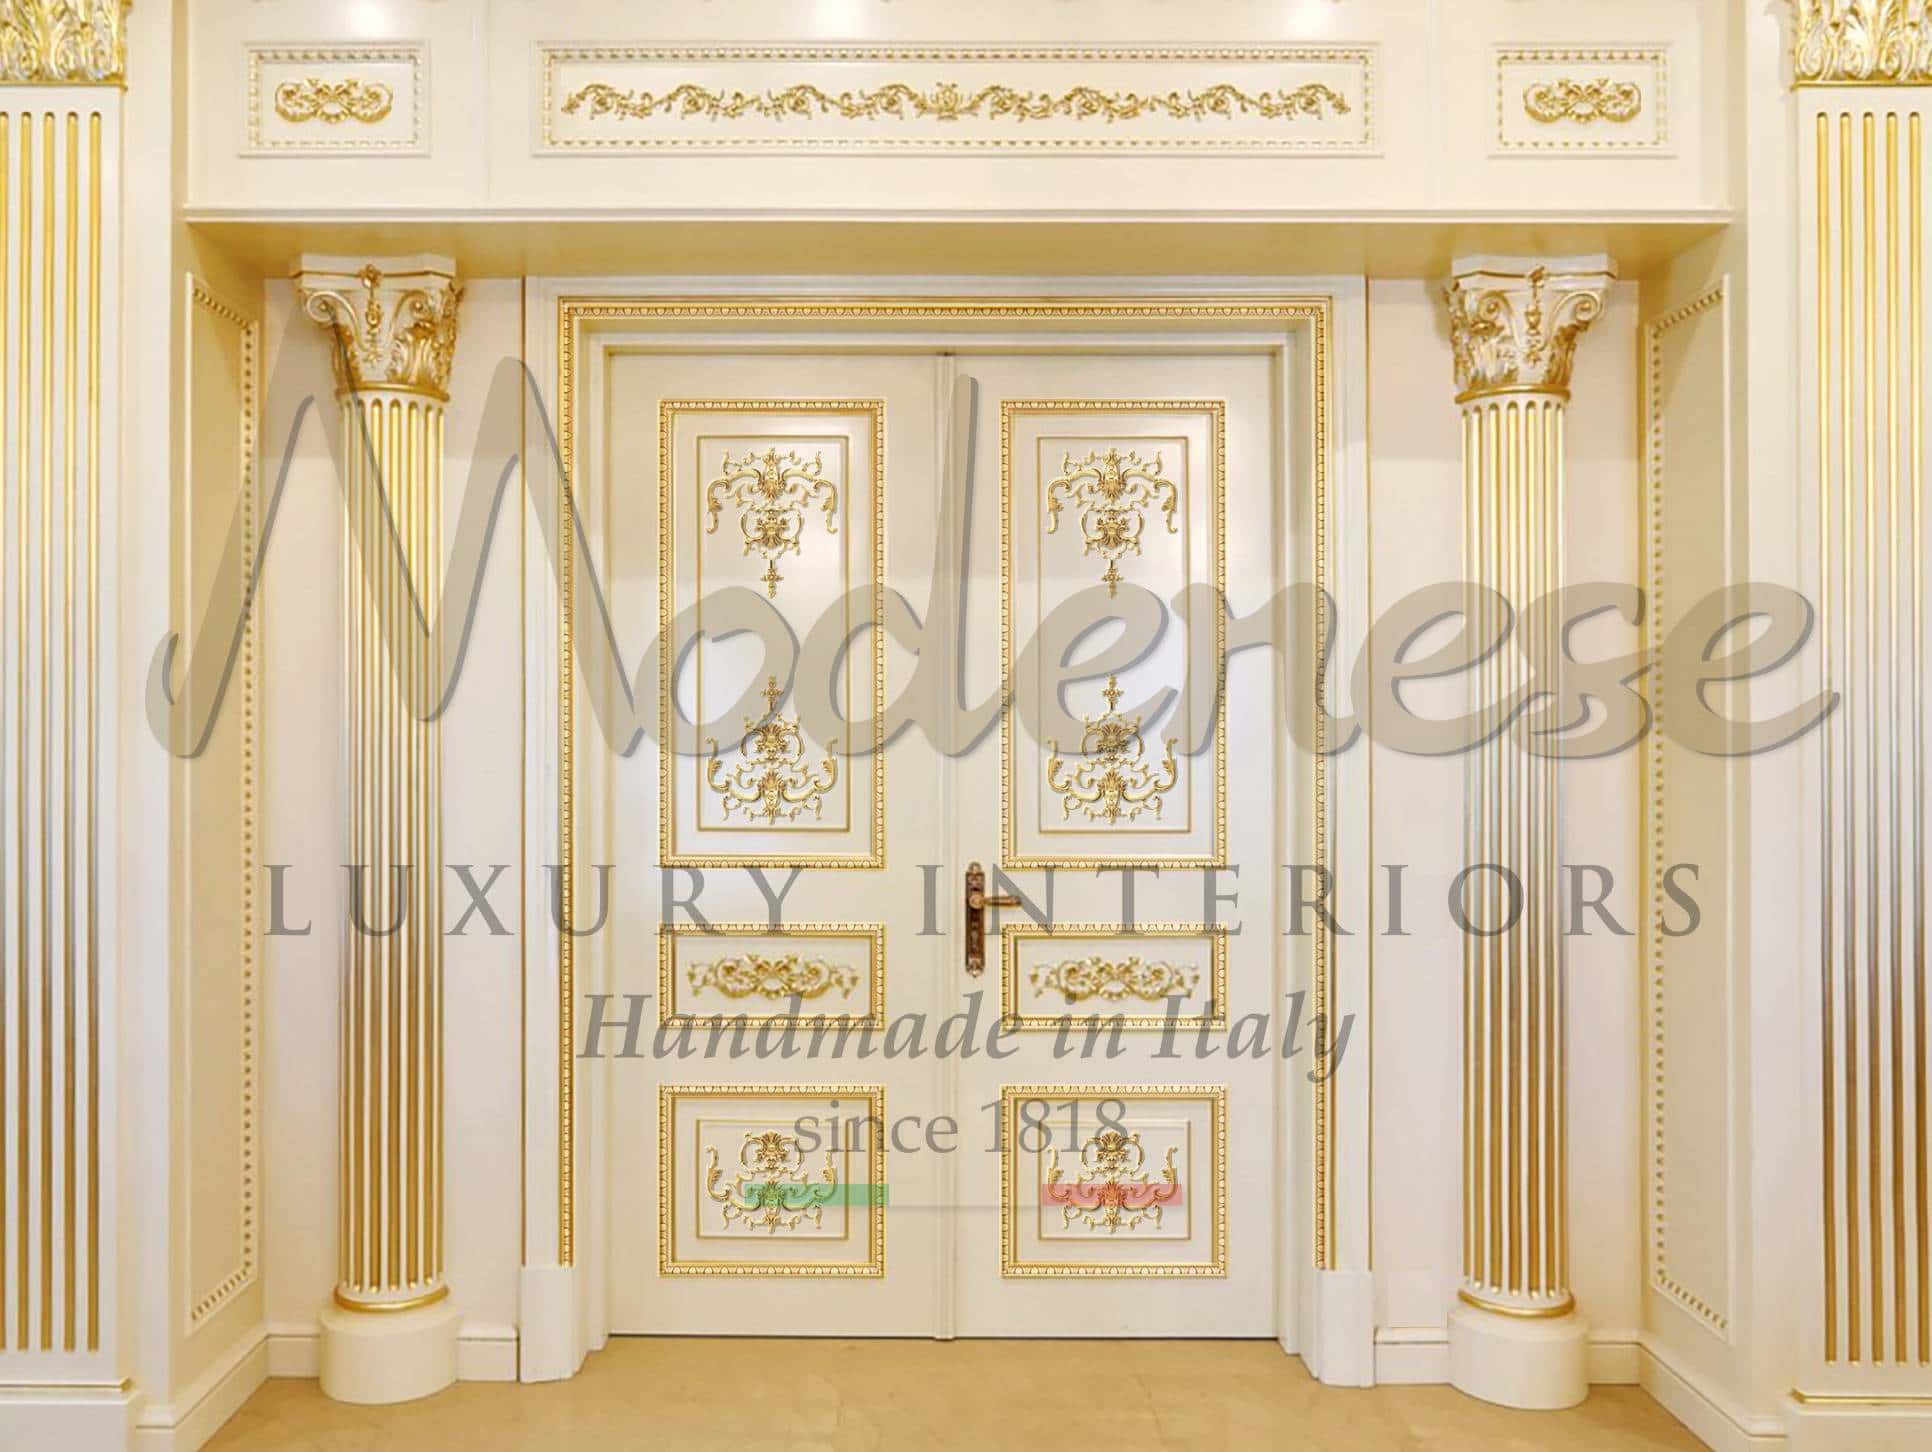 portes sur mesure conception production fabrication artisanale portes classiques de luxe opulentes dorées aménagement intérieur décoration intérieure villas résidentielles palais consultant de projet